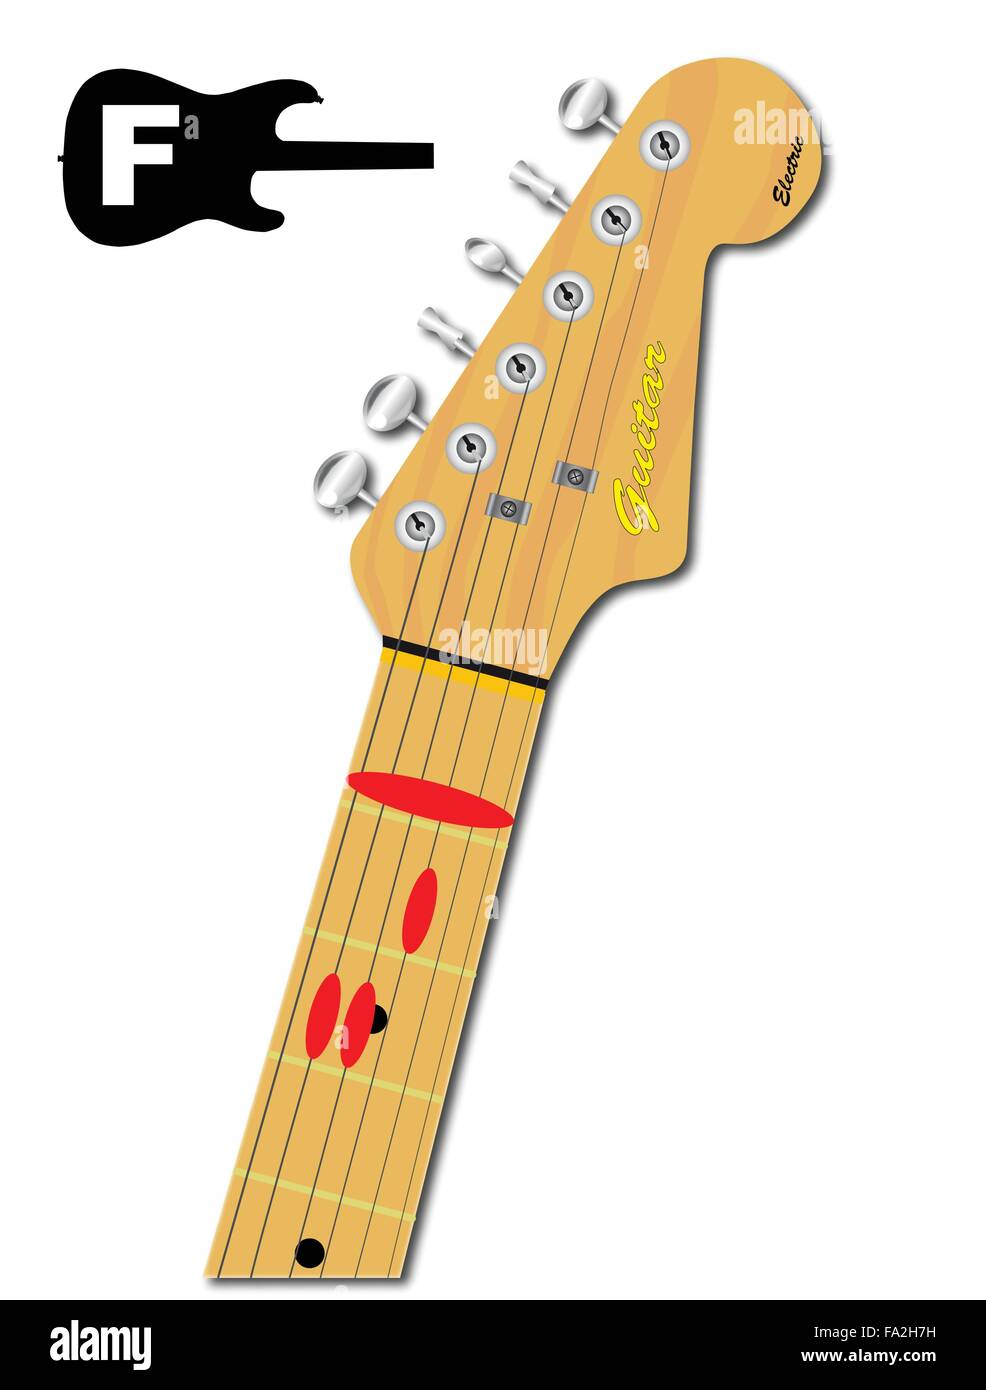 Una chitarra elettrica del collo con la conformazione a corda di circonferenza per F principali indicati con pulsanti rossi Illustrazione Vettoriale